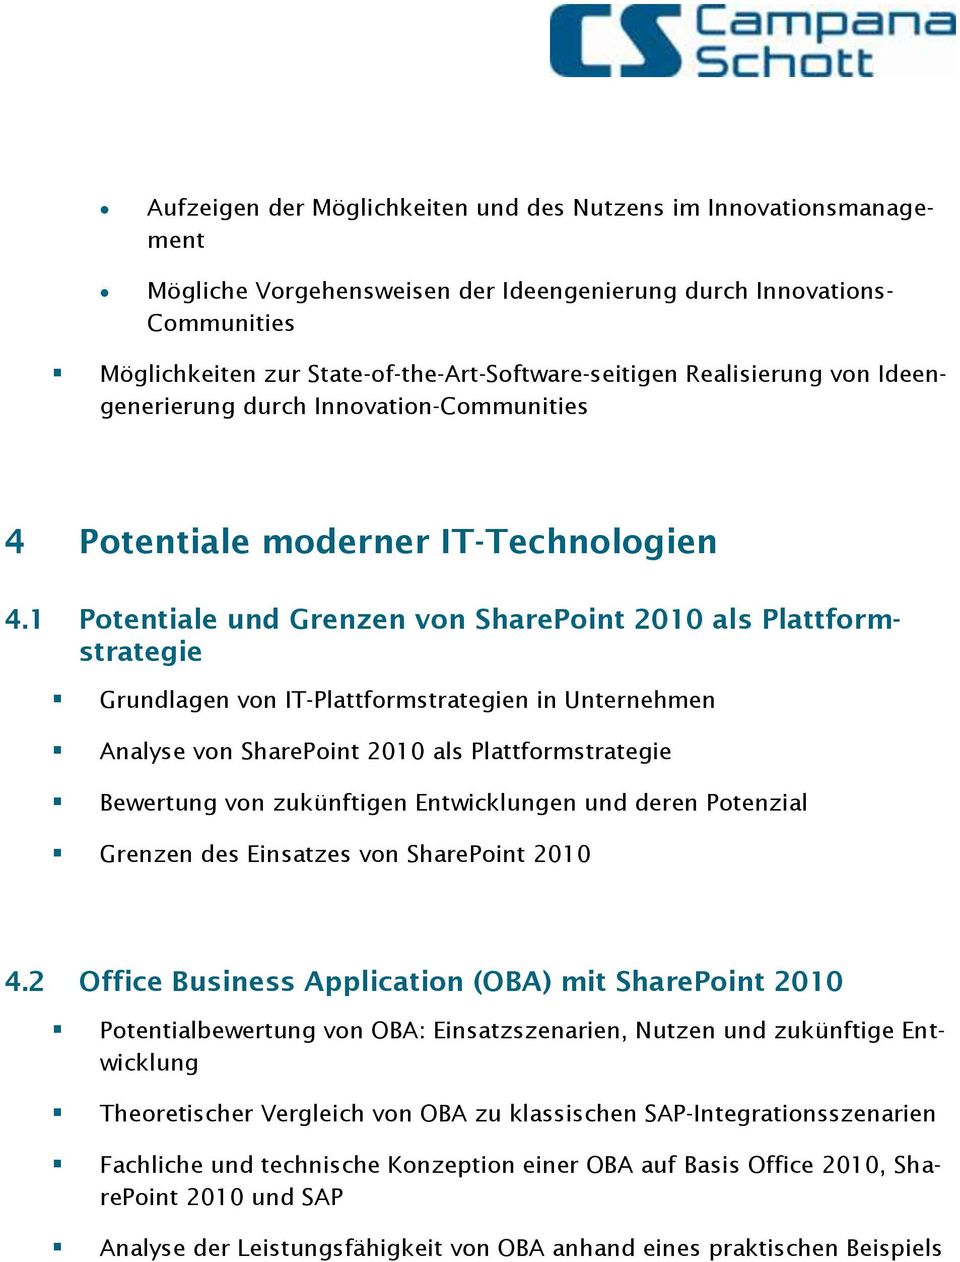 1 Potentiale und Grenzen von SharePoint 2010 als Plattformstrategie Grundlagen von IT-Plattformstrategien in Unternehmen Analyse von SharePoint 2010 als Plattformstrategie Bewertung von zukünftigen